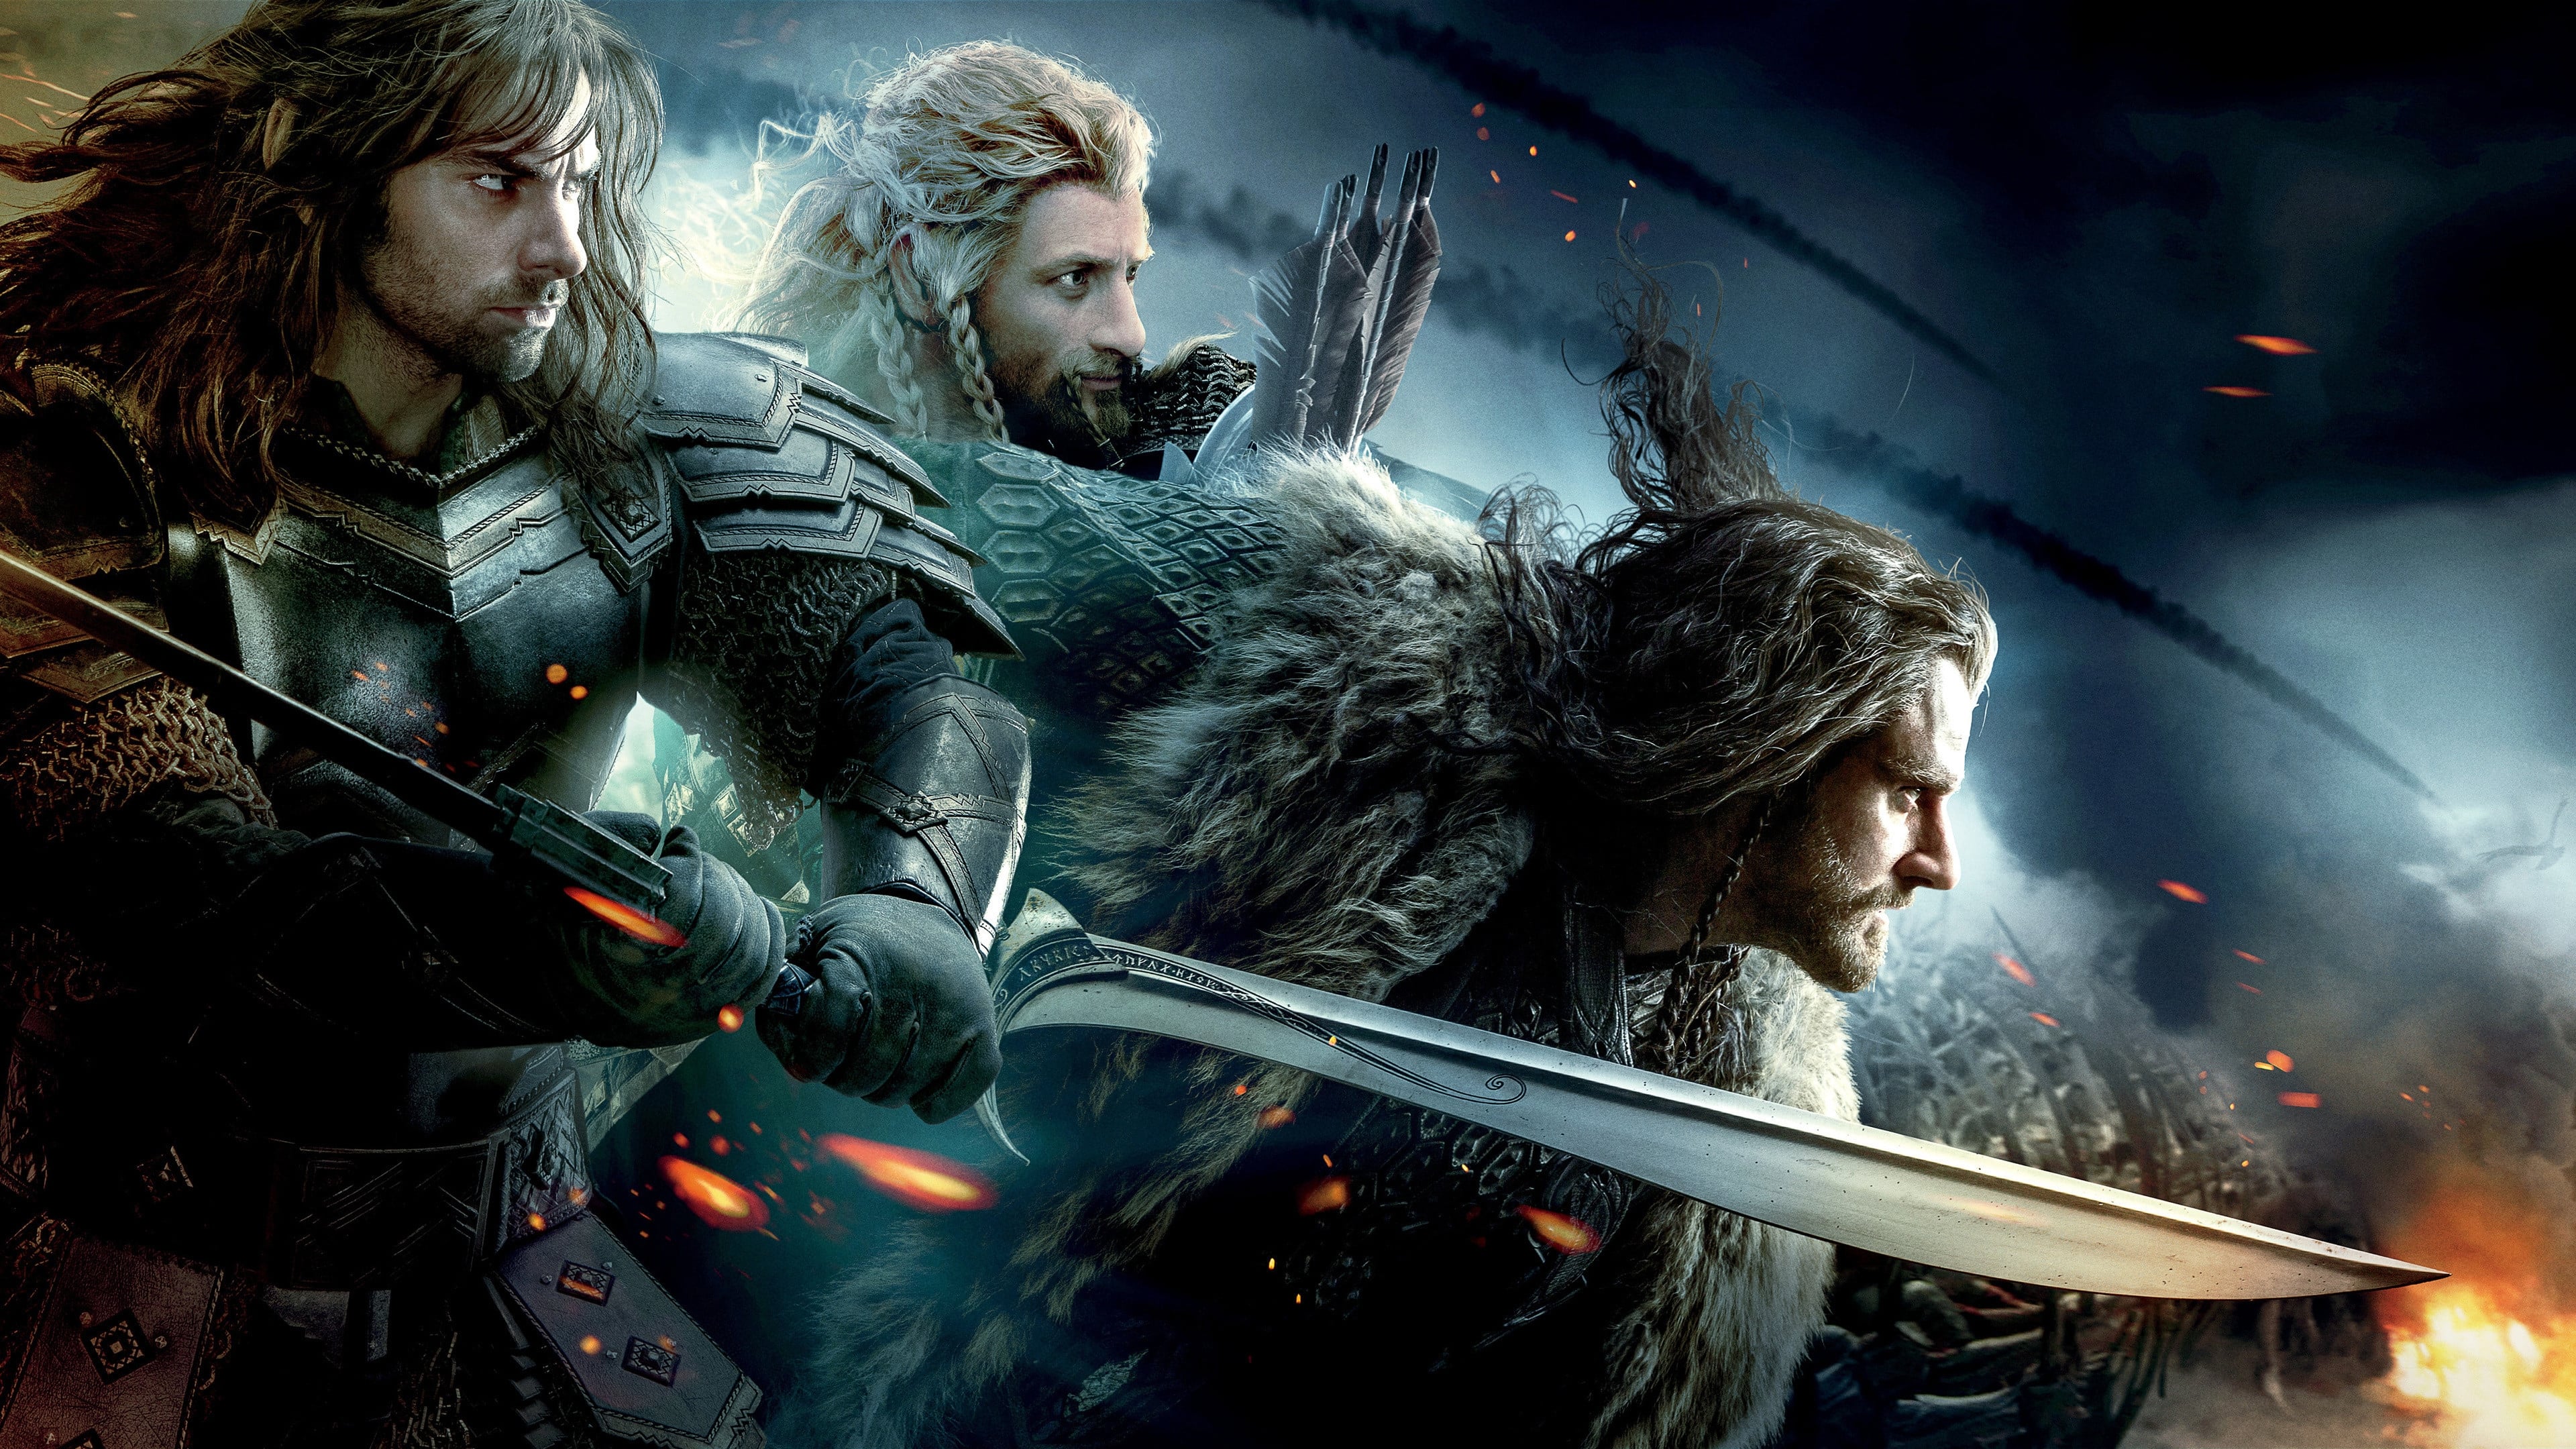 Image du film Le Hobbit : la bataille des cinq armées (version longue) oyfgb7crpcrjylppbdr2vecaurqjpg